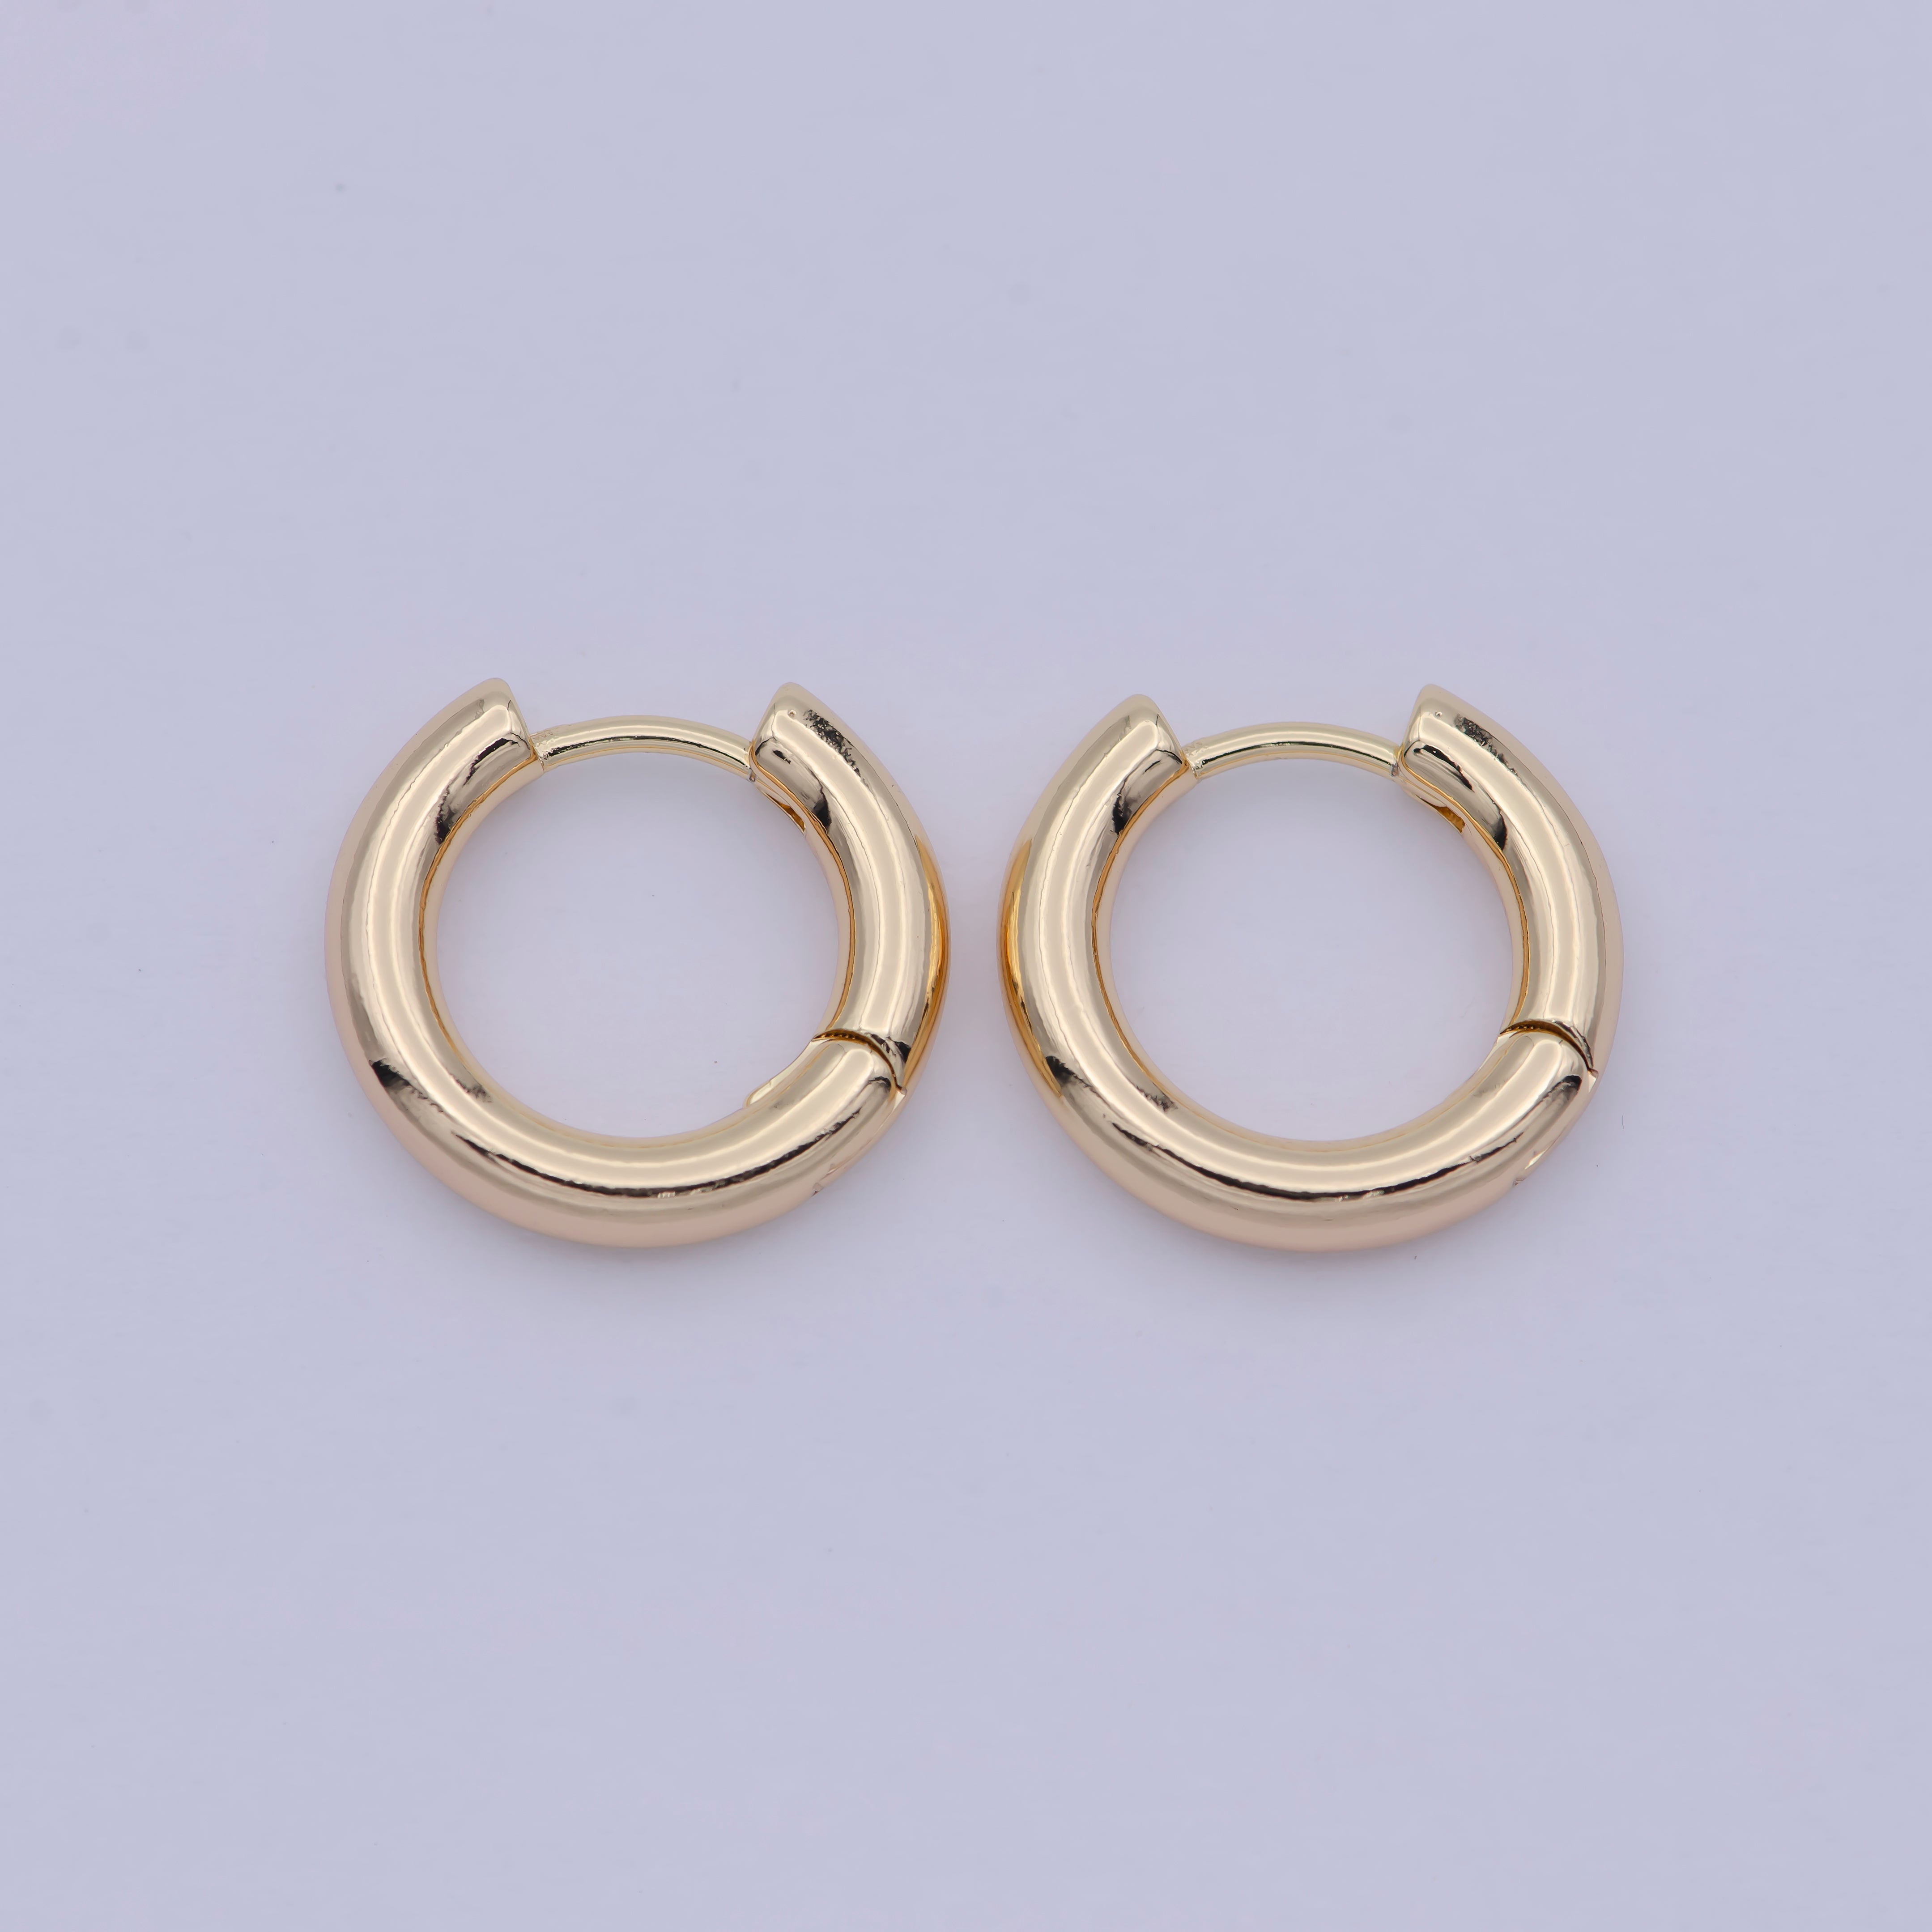 18k Gold Filled Thin Mini Ear Huggie Hoop Earrings, GOLD cartilage hoops Earring Hypoallergenic - DLUXCA